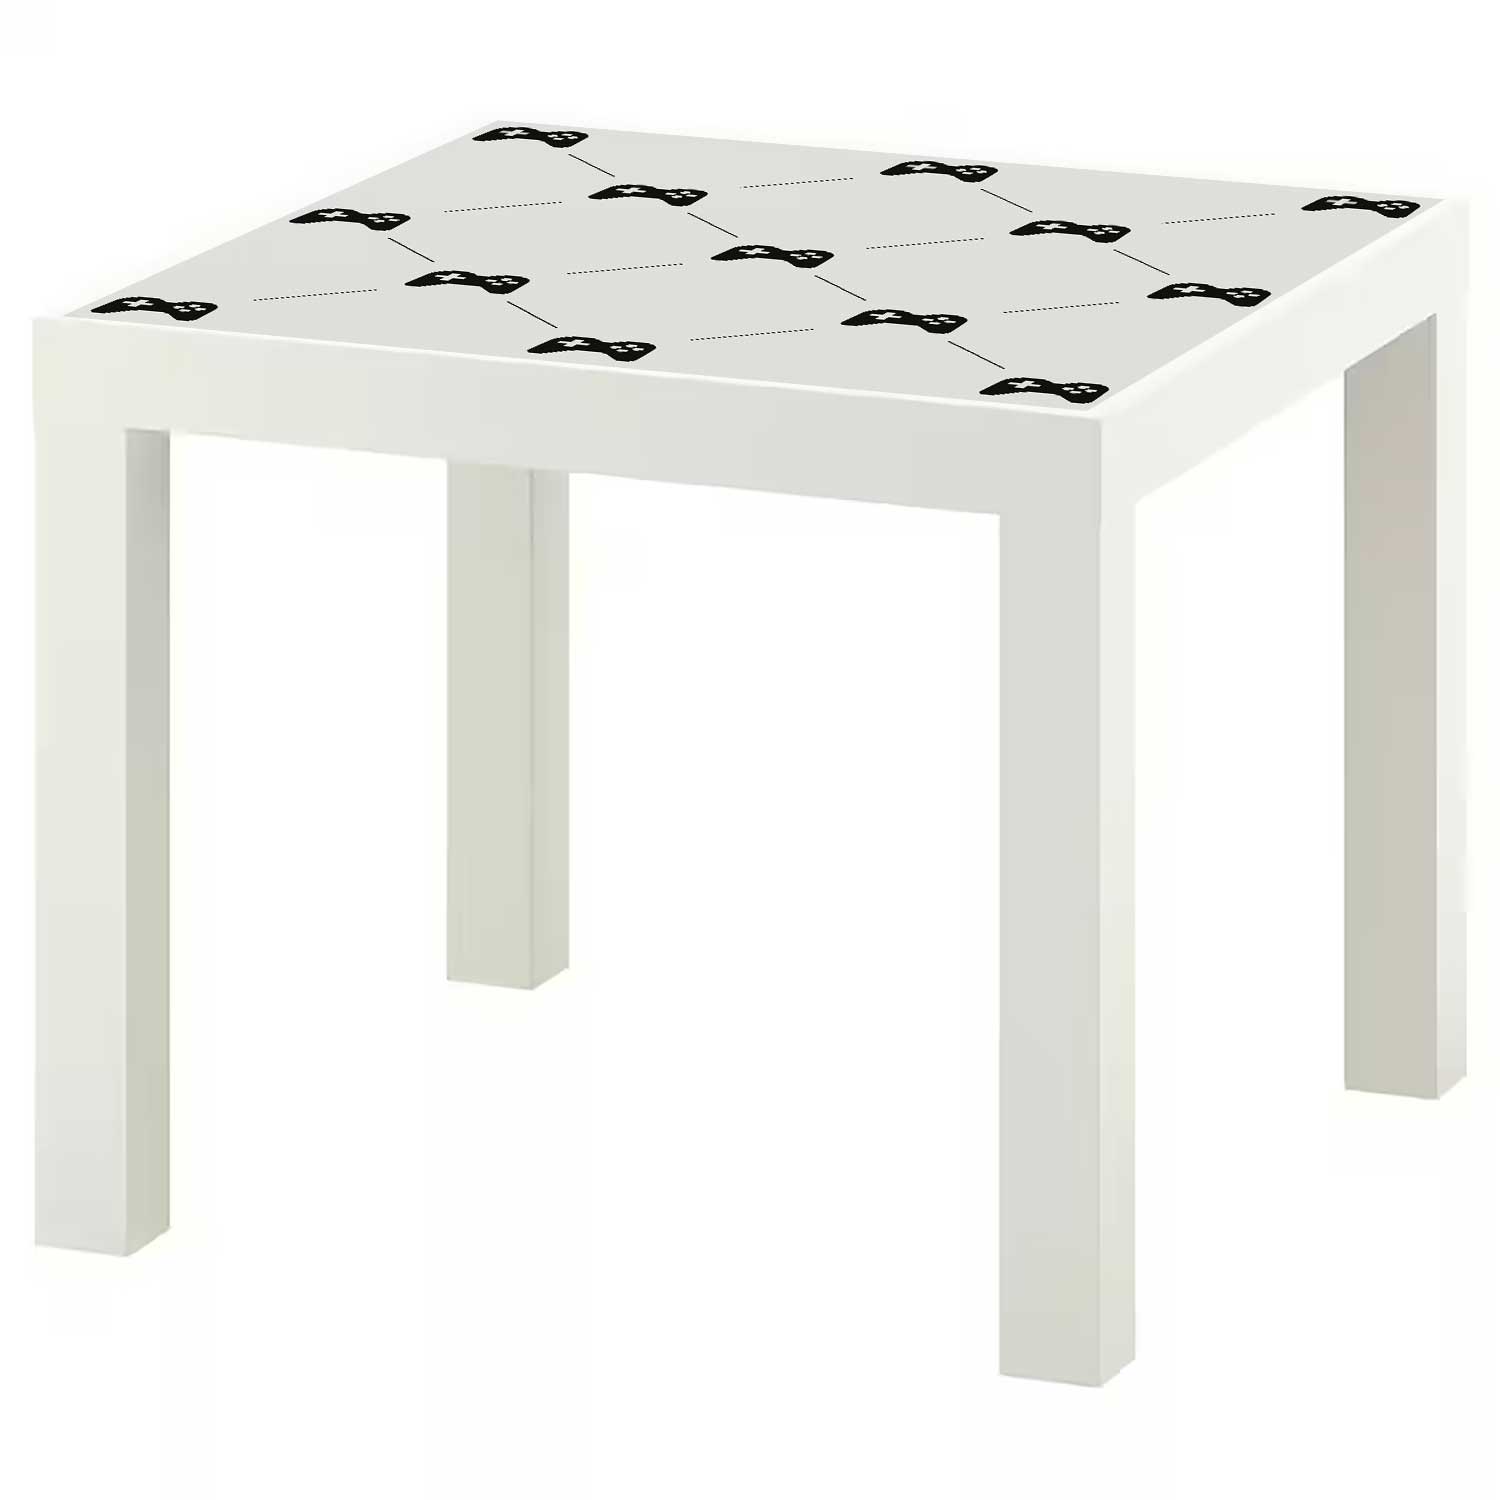 Möbelfolie für IKEA Lack Tisch 55x55 cm 'Gamepad'